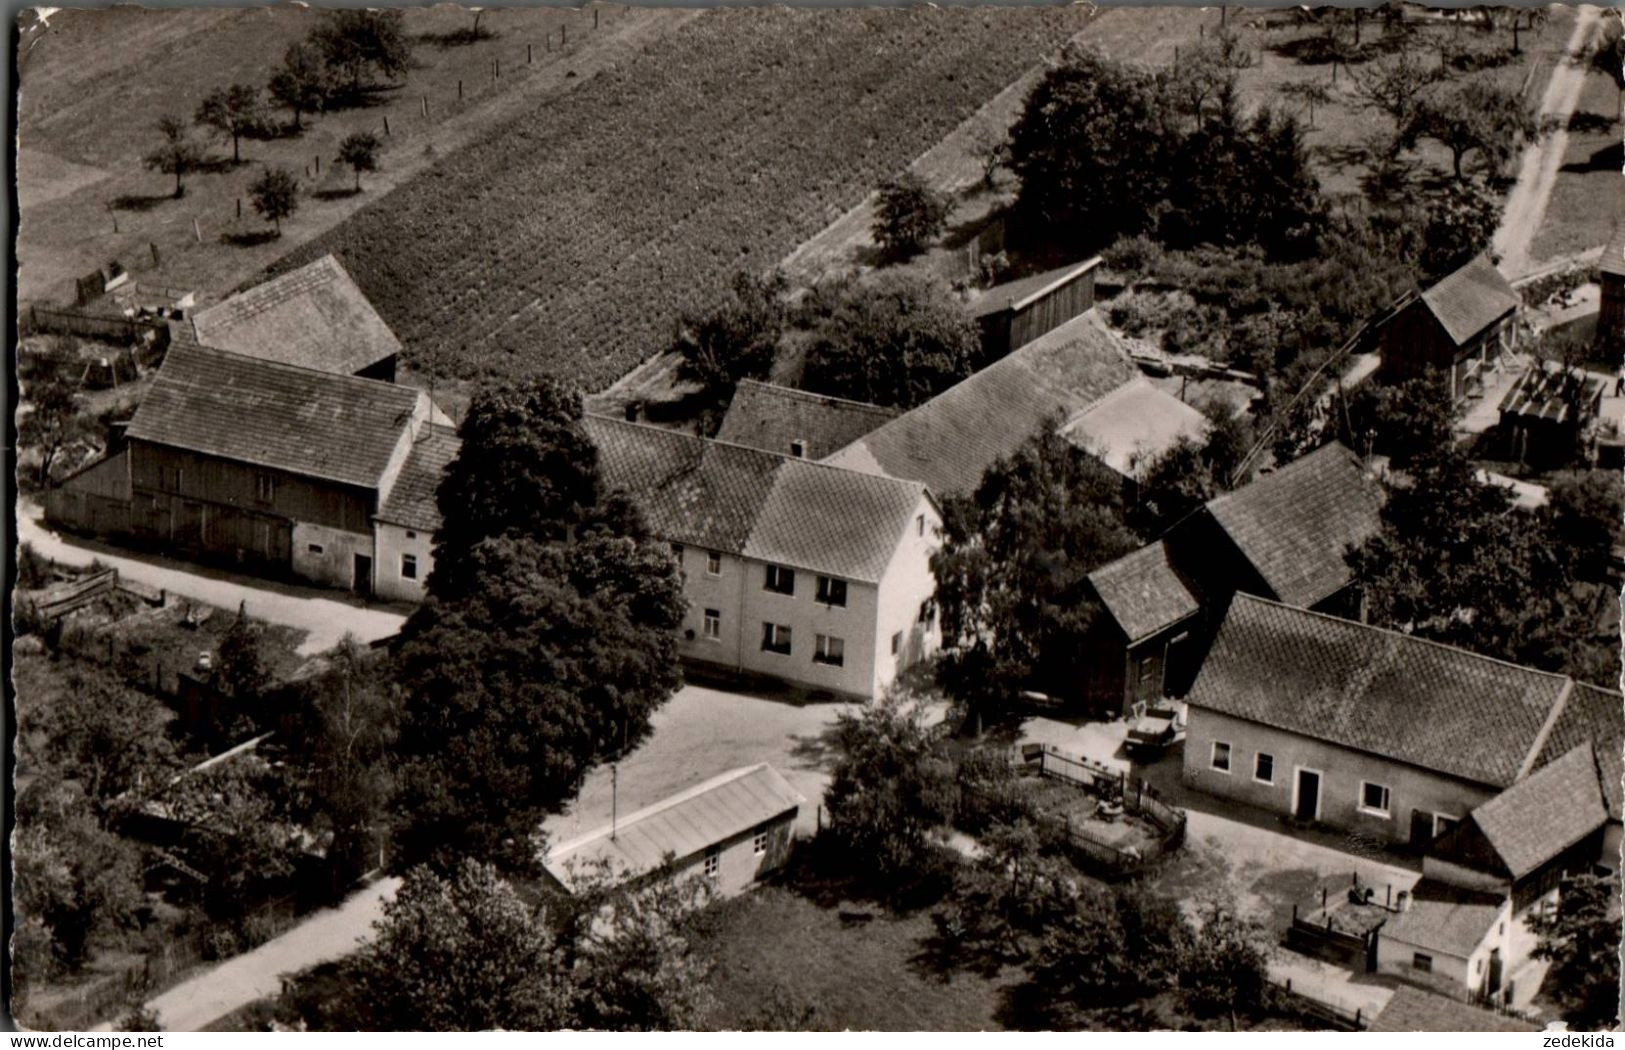 H2432 - Trippach Gasthaus Gaststätte Wittmann - Luftbild Luftaufnahme - Weiden I. D. Oberpfalz